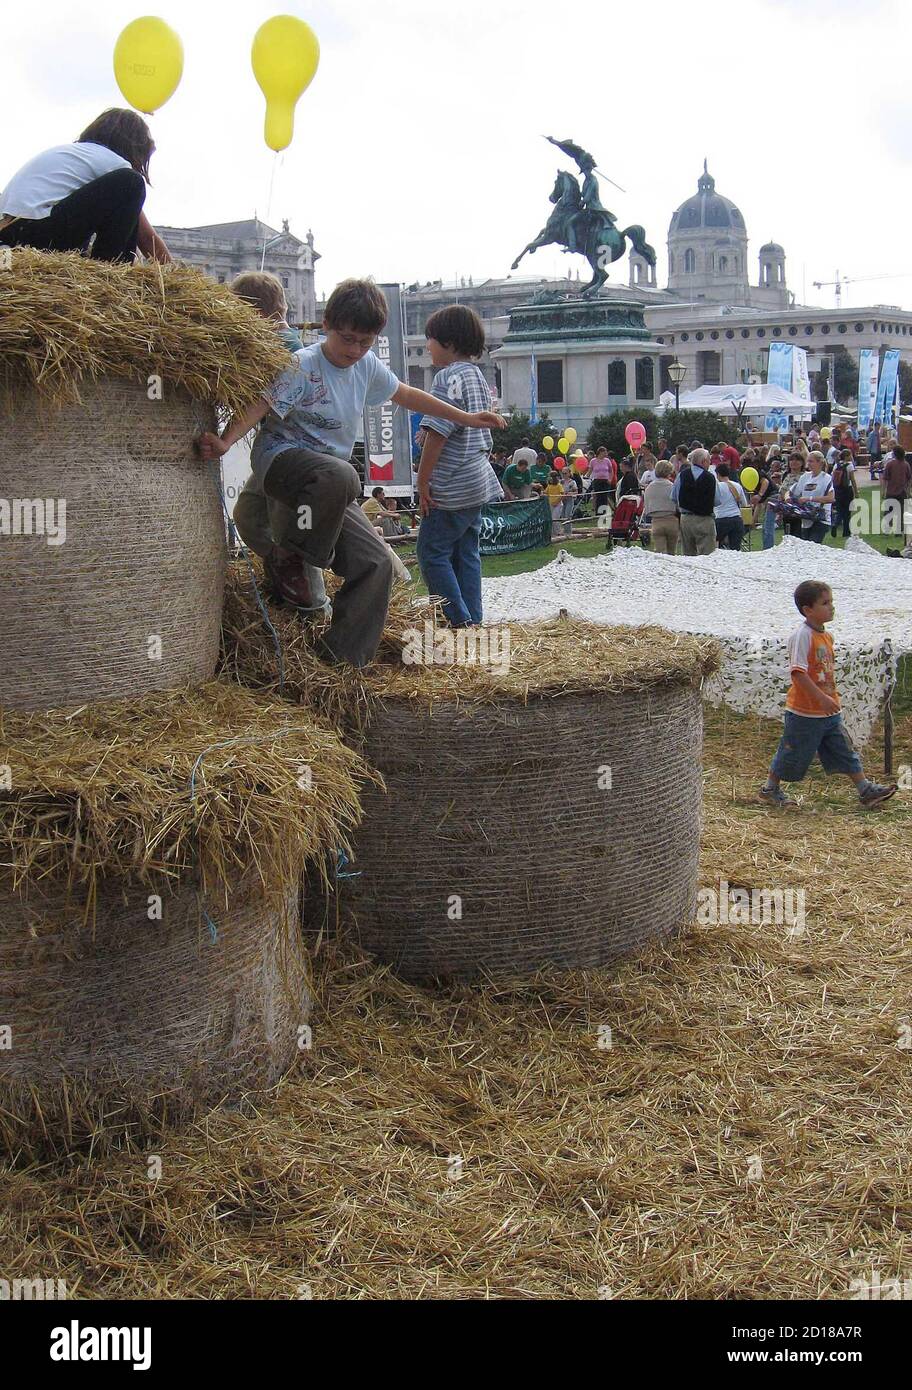 Am Wiener Heldenplatz fand am 11. September 2005 das traditionelle Erntedankfest des Bauernbundes statt. Im Bild geniessen junge Besucher die Strohballen-Huepfburg. REUTERS/Herwig Prammer REUTERS  PR/ Stock Photo